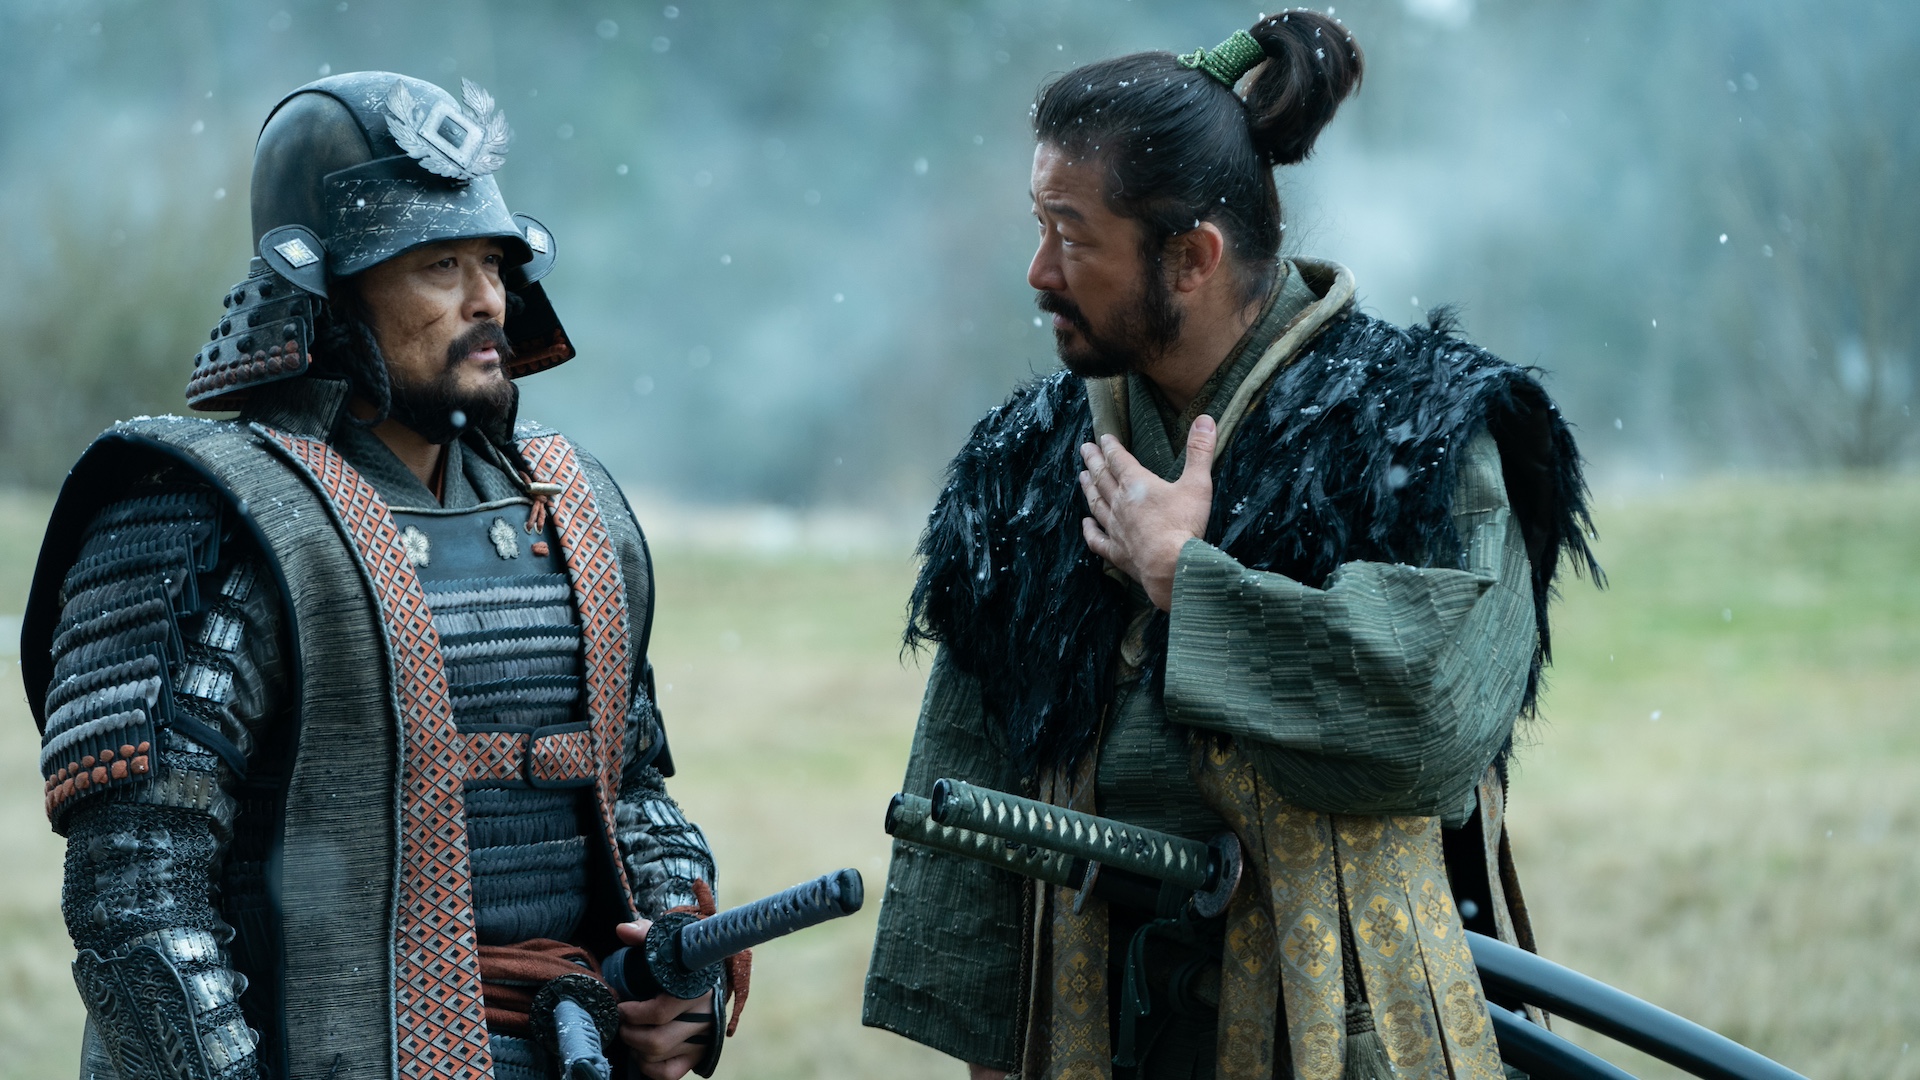 The 7 Best Samurai Movies to Watch After Shogun | Den of Geek